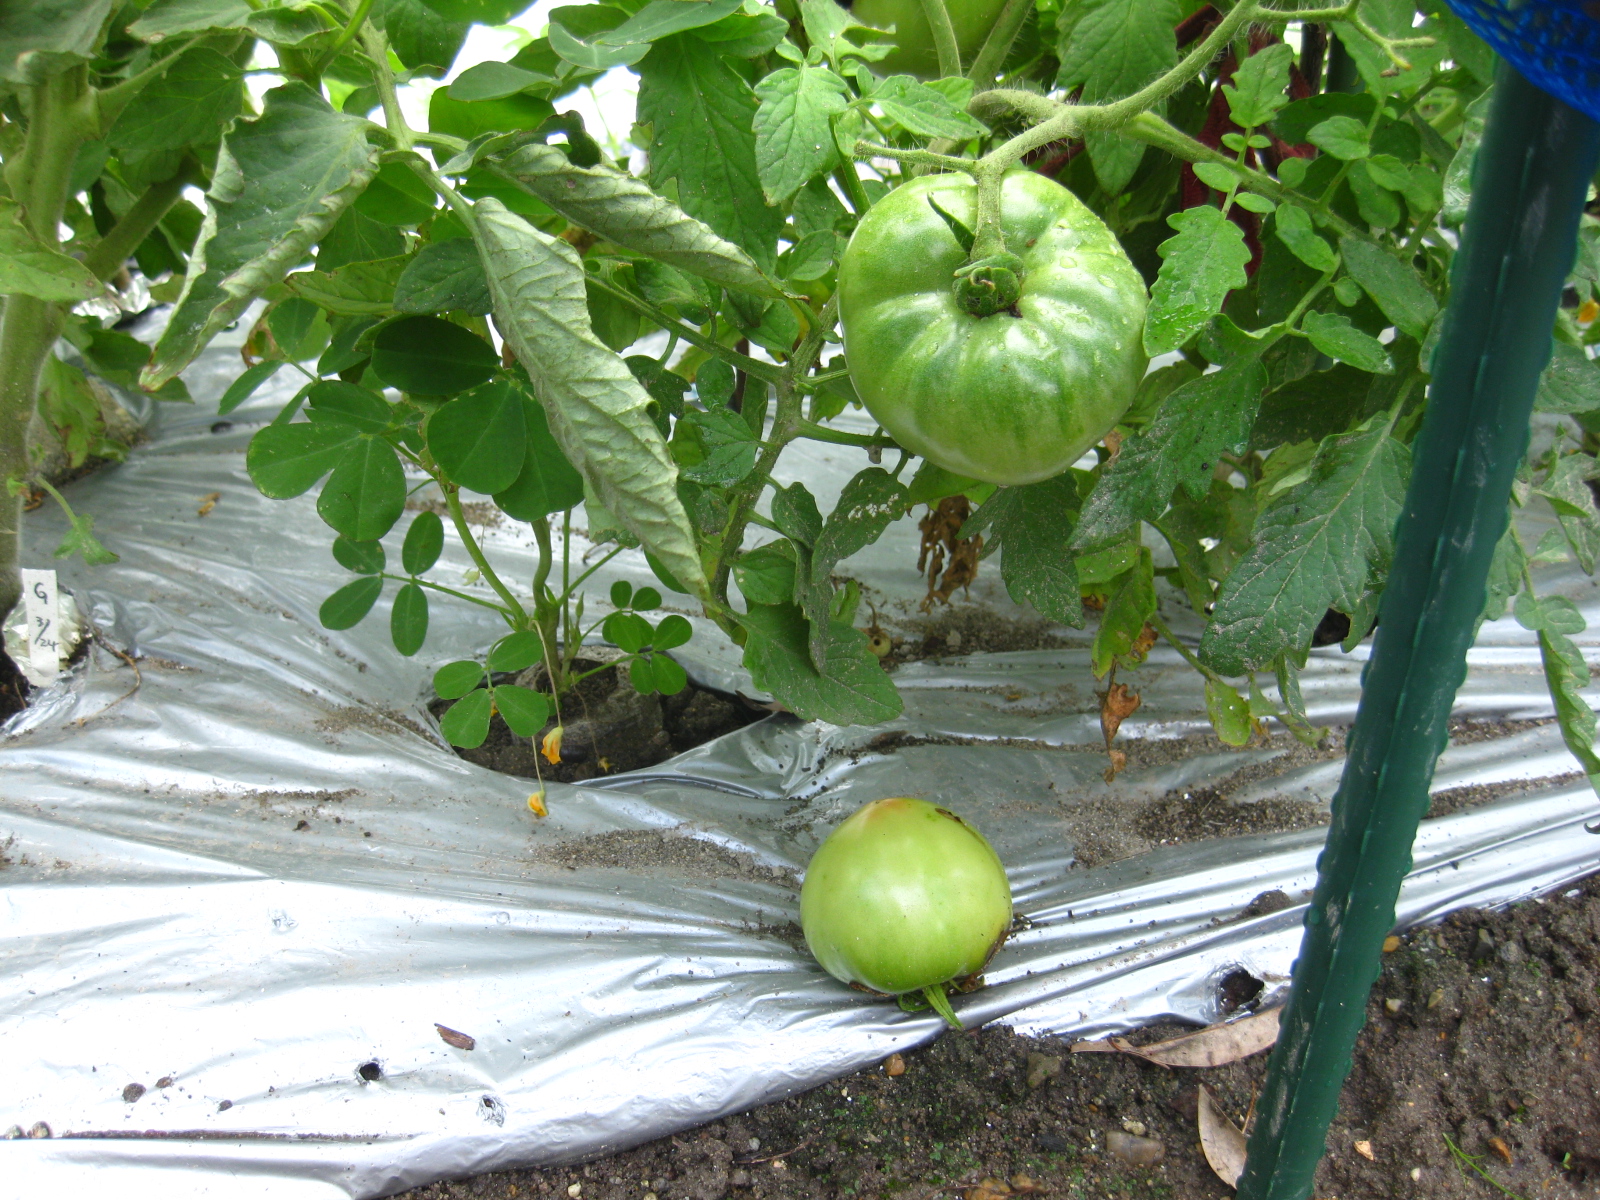 年 Iトマトもタバコガに食害されていた 冒険菜園の 別館 公開備忘録 愛知県西部